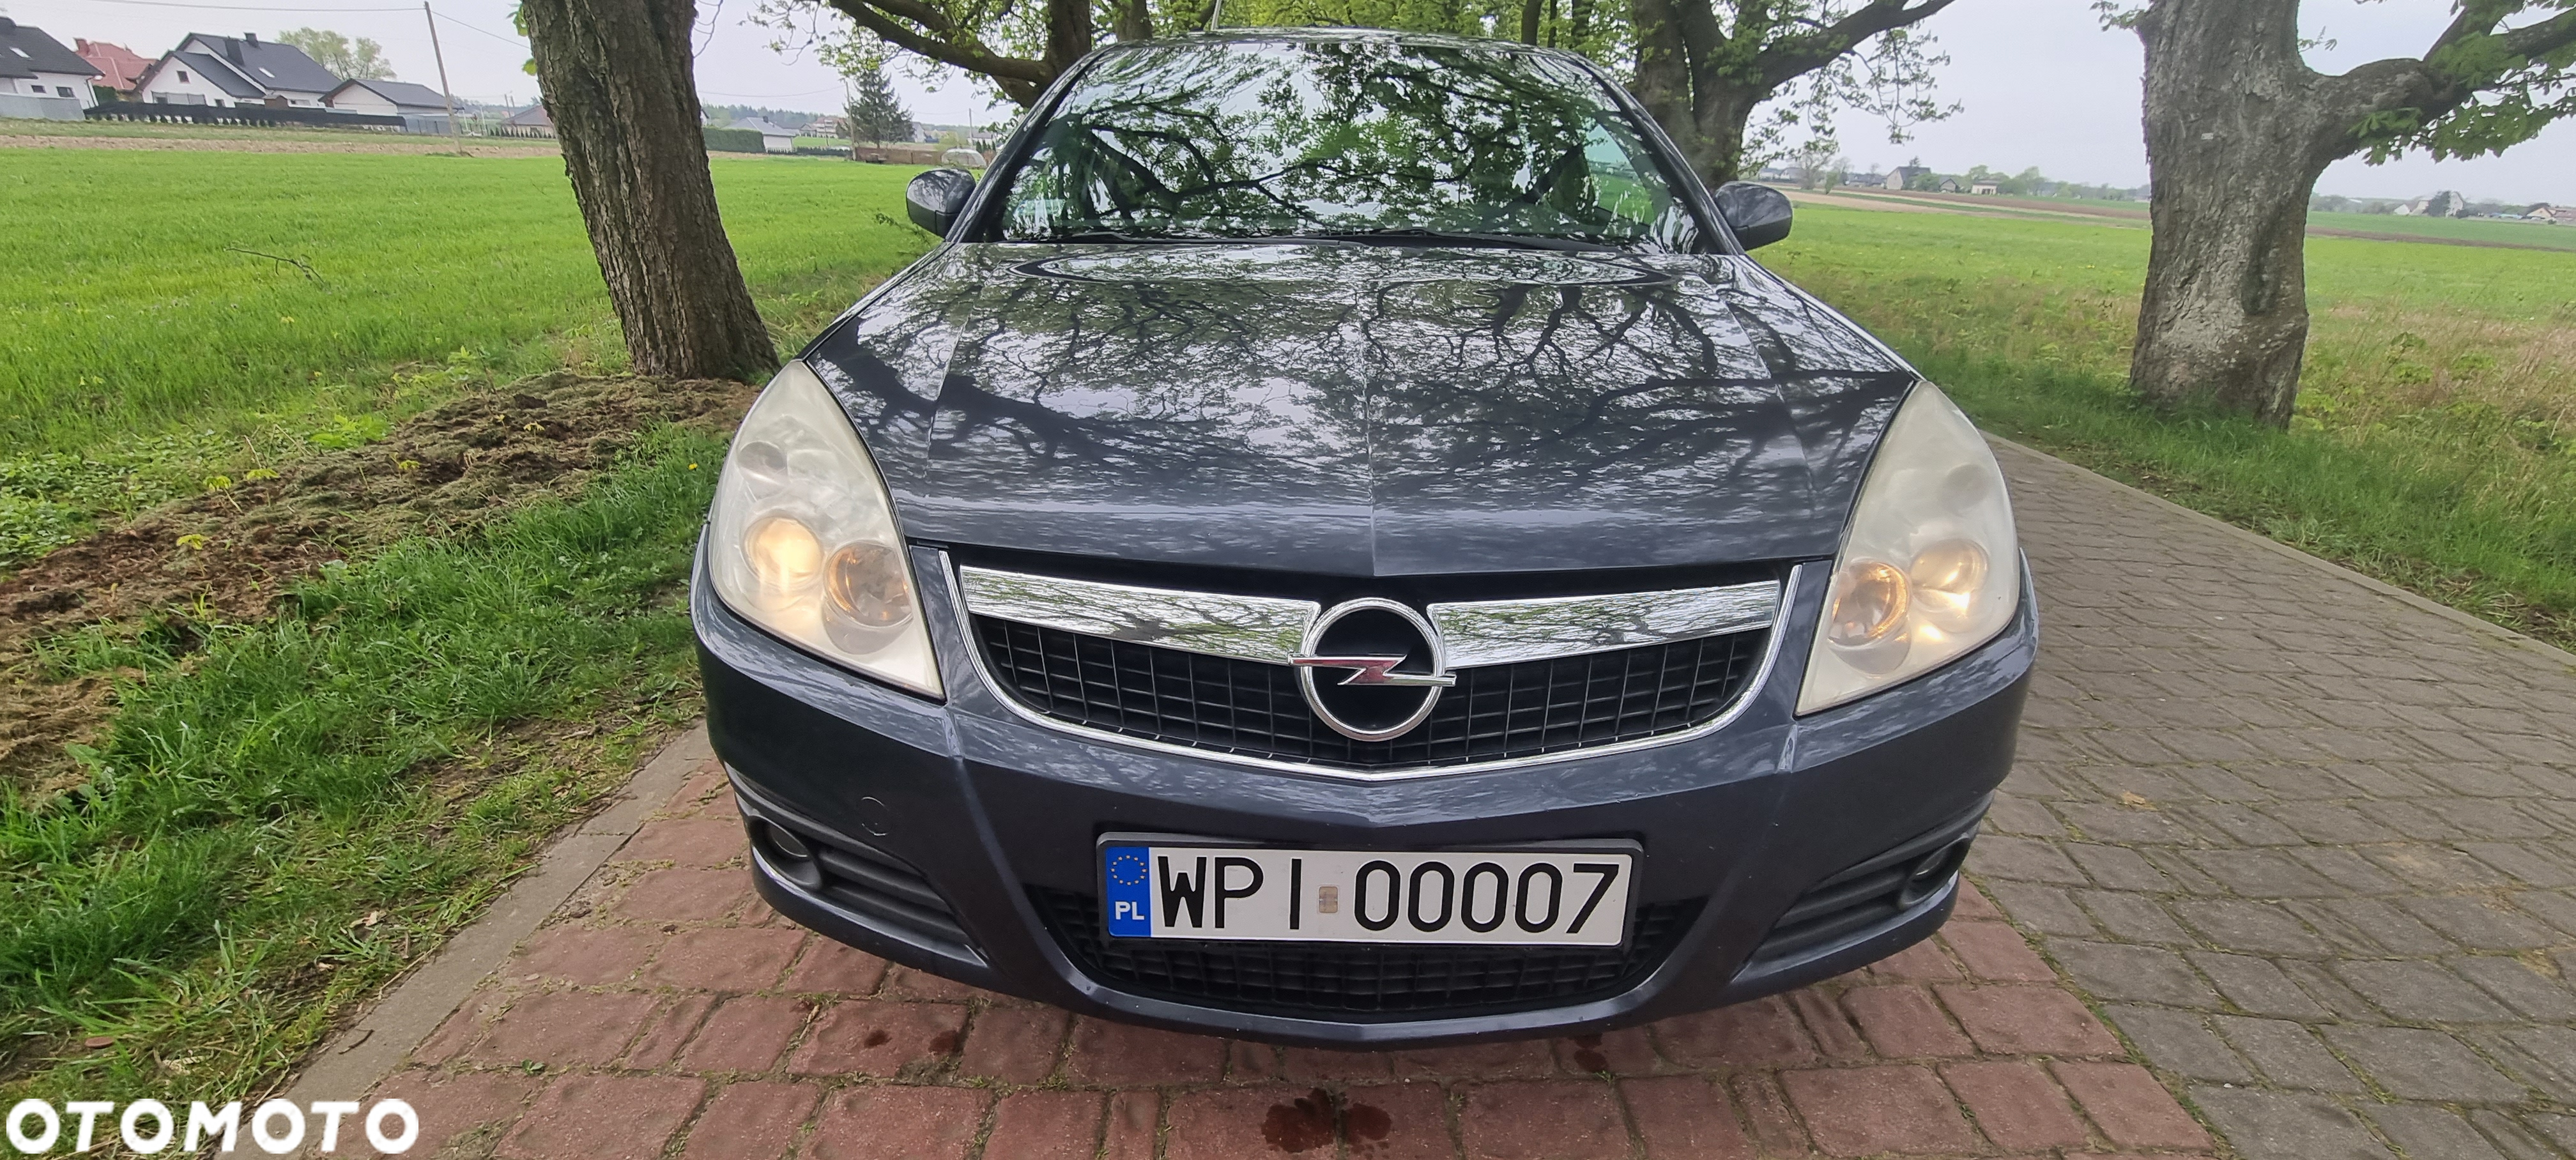 Opel Vectra 1.9 CDTI Sport - 19